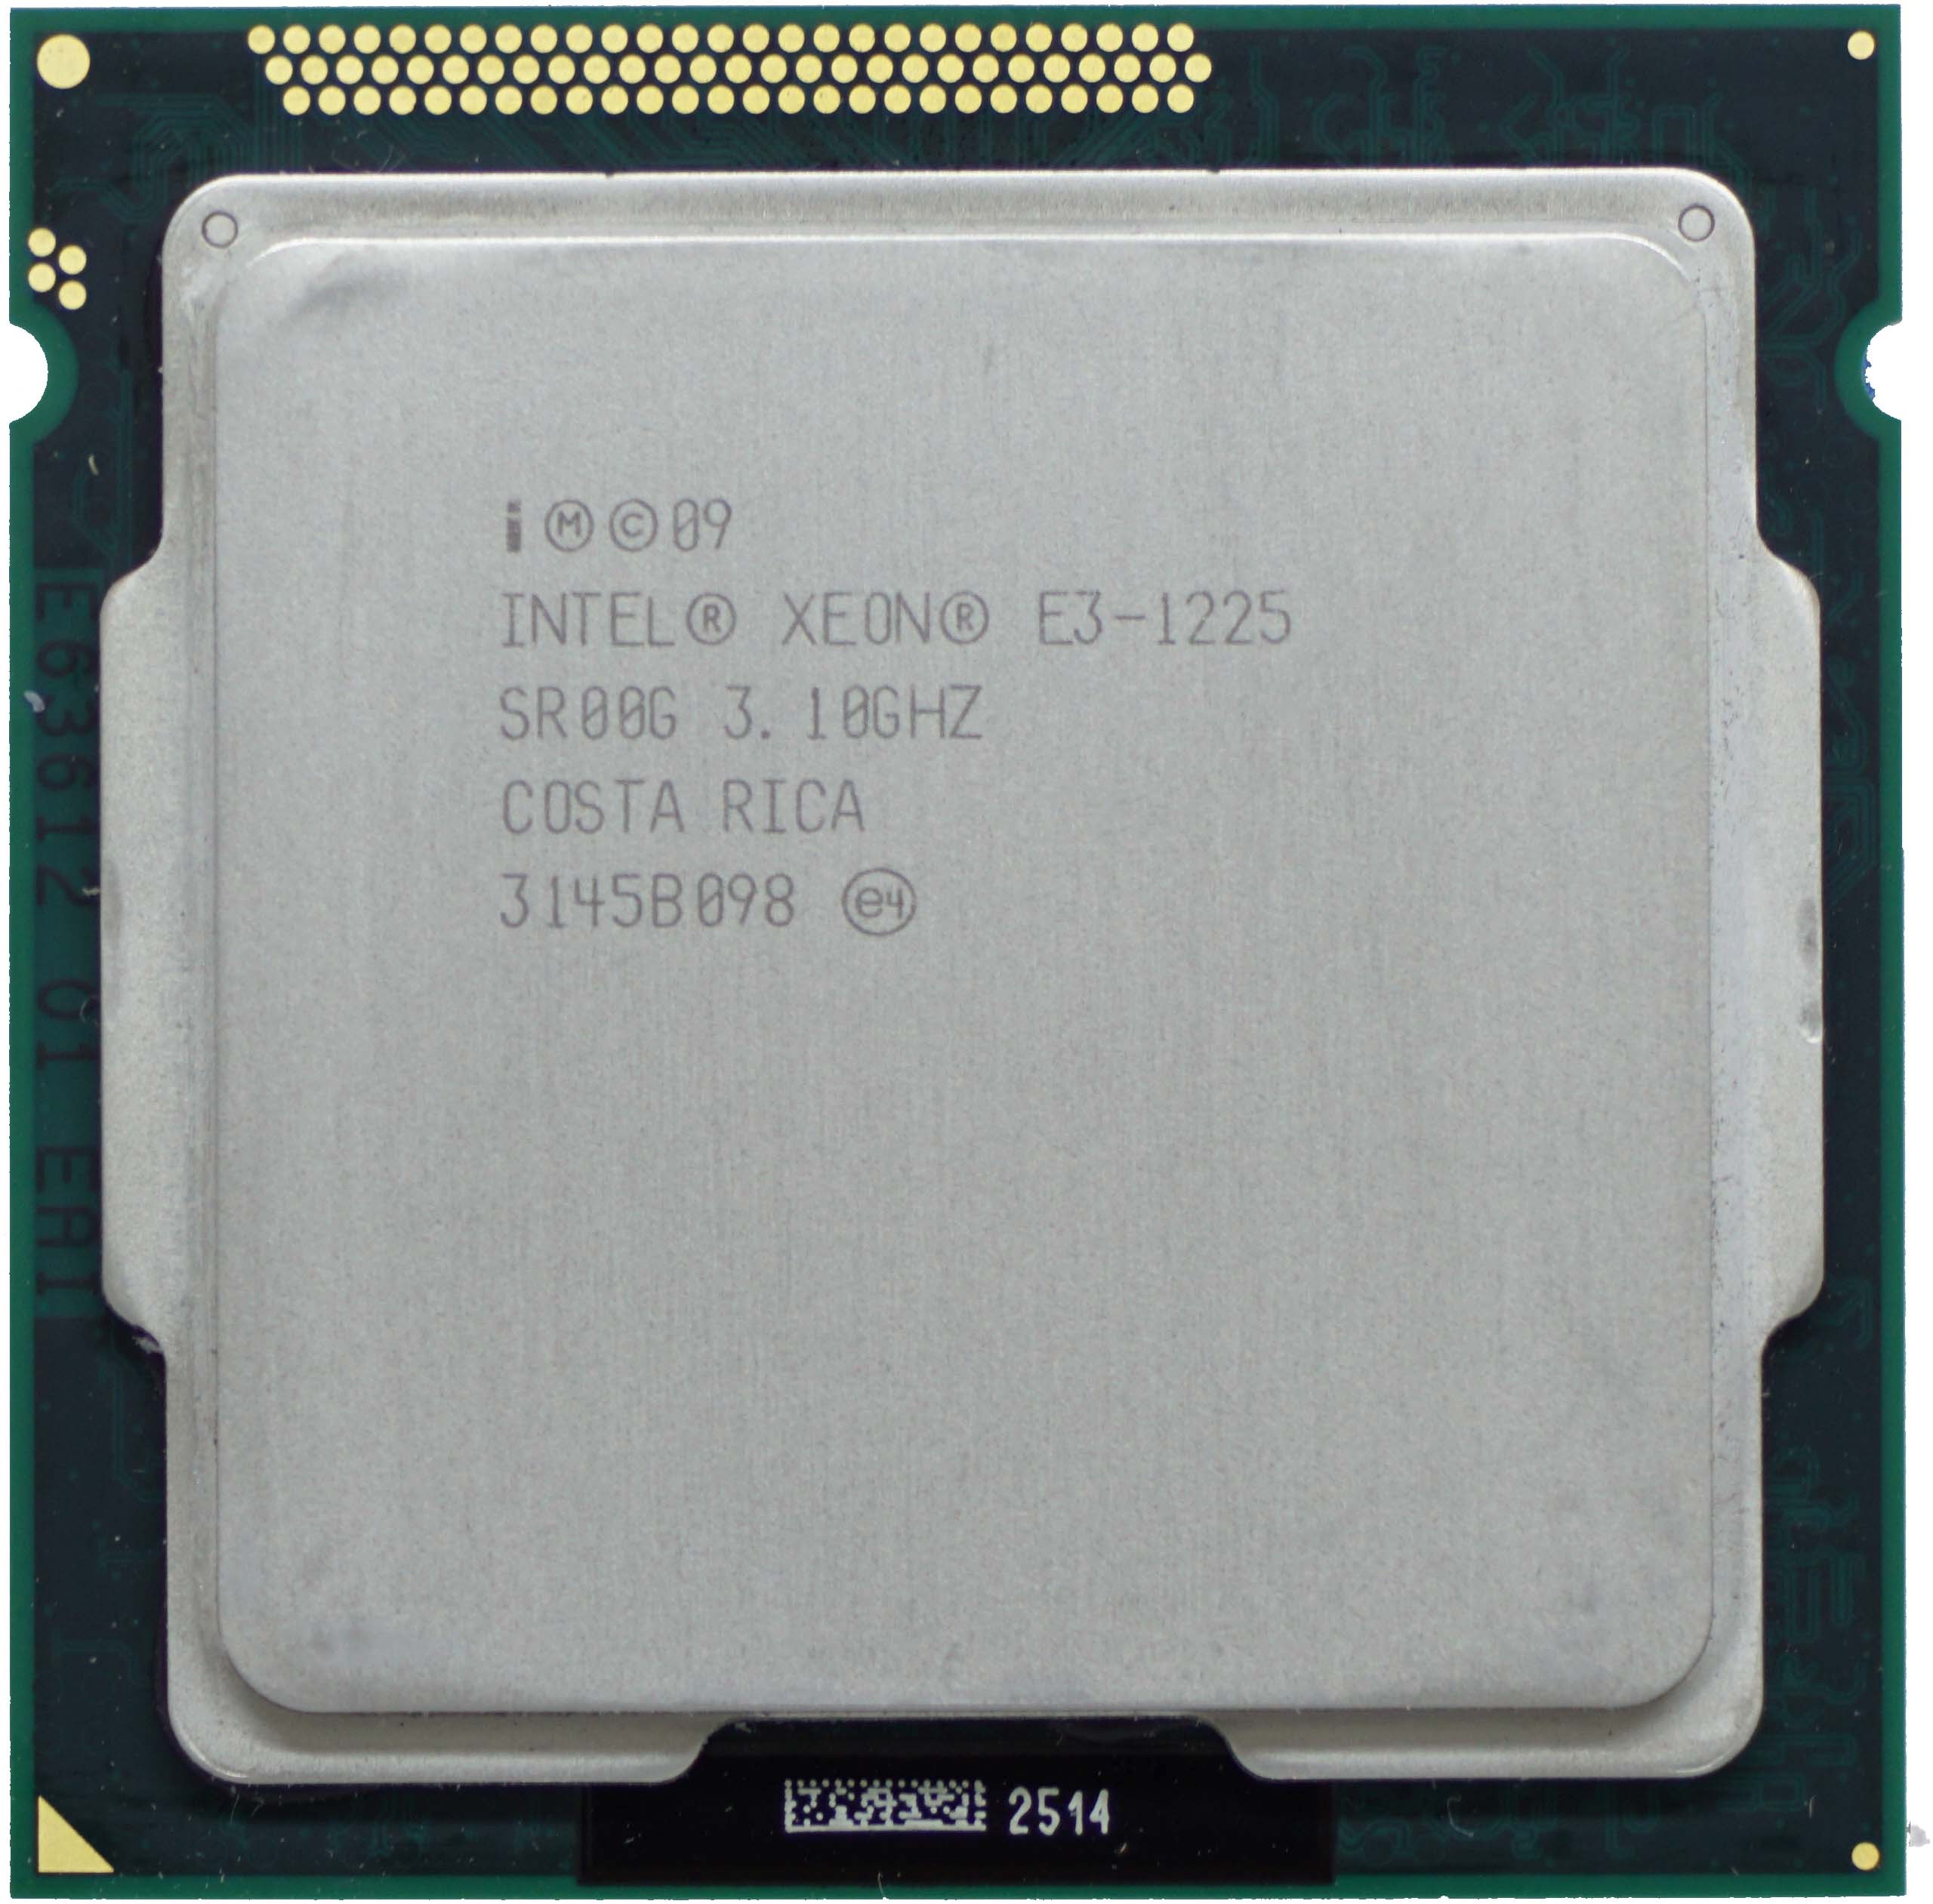 Intel Xeon E3-1225 V1 (SR00G) 3.10Ghz Quad (4) Core LGA1155 95W CPU